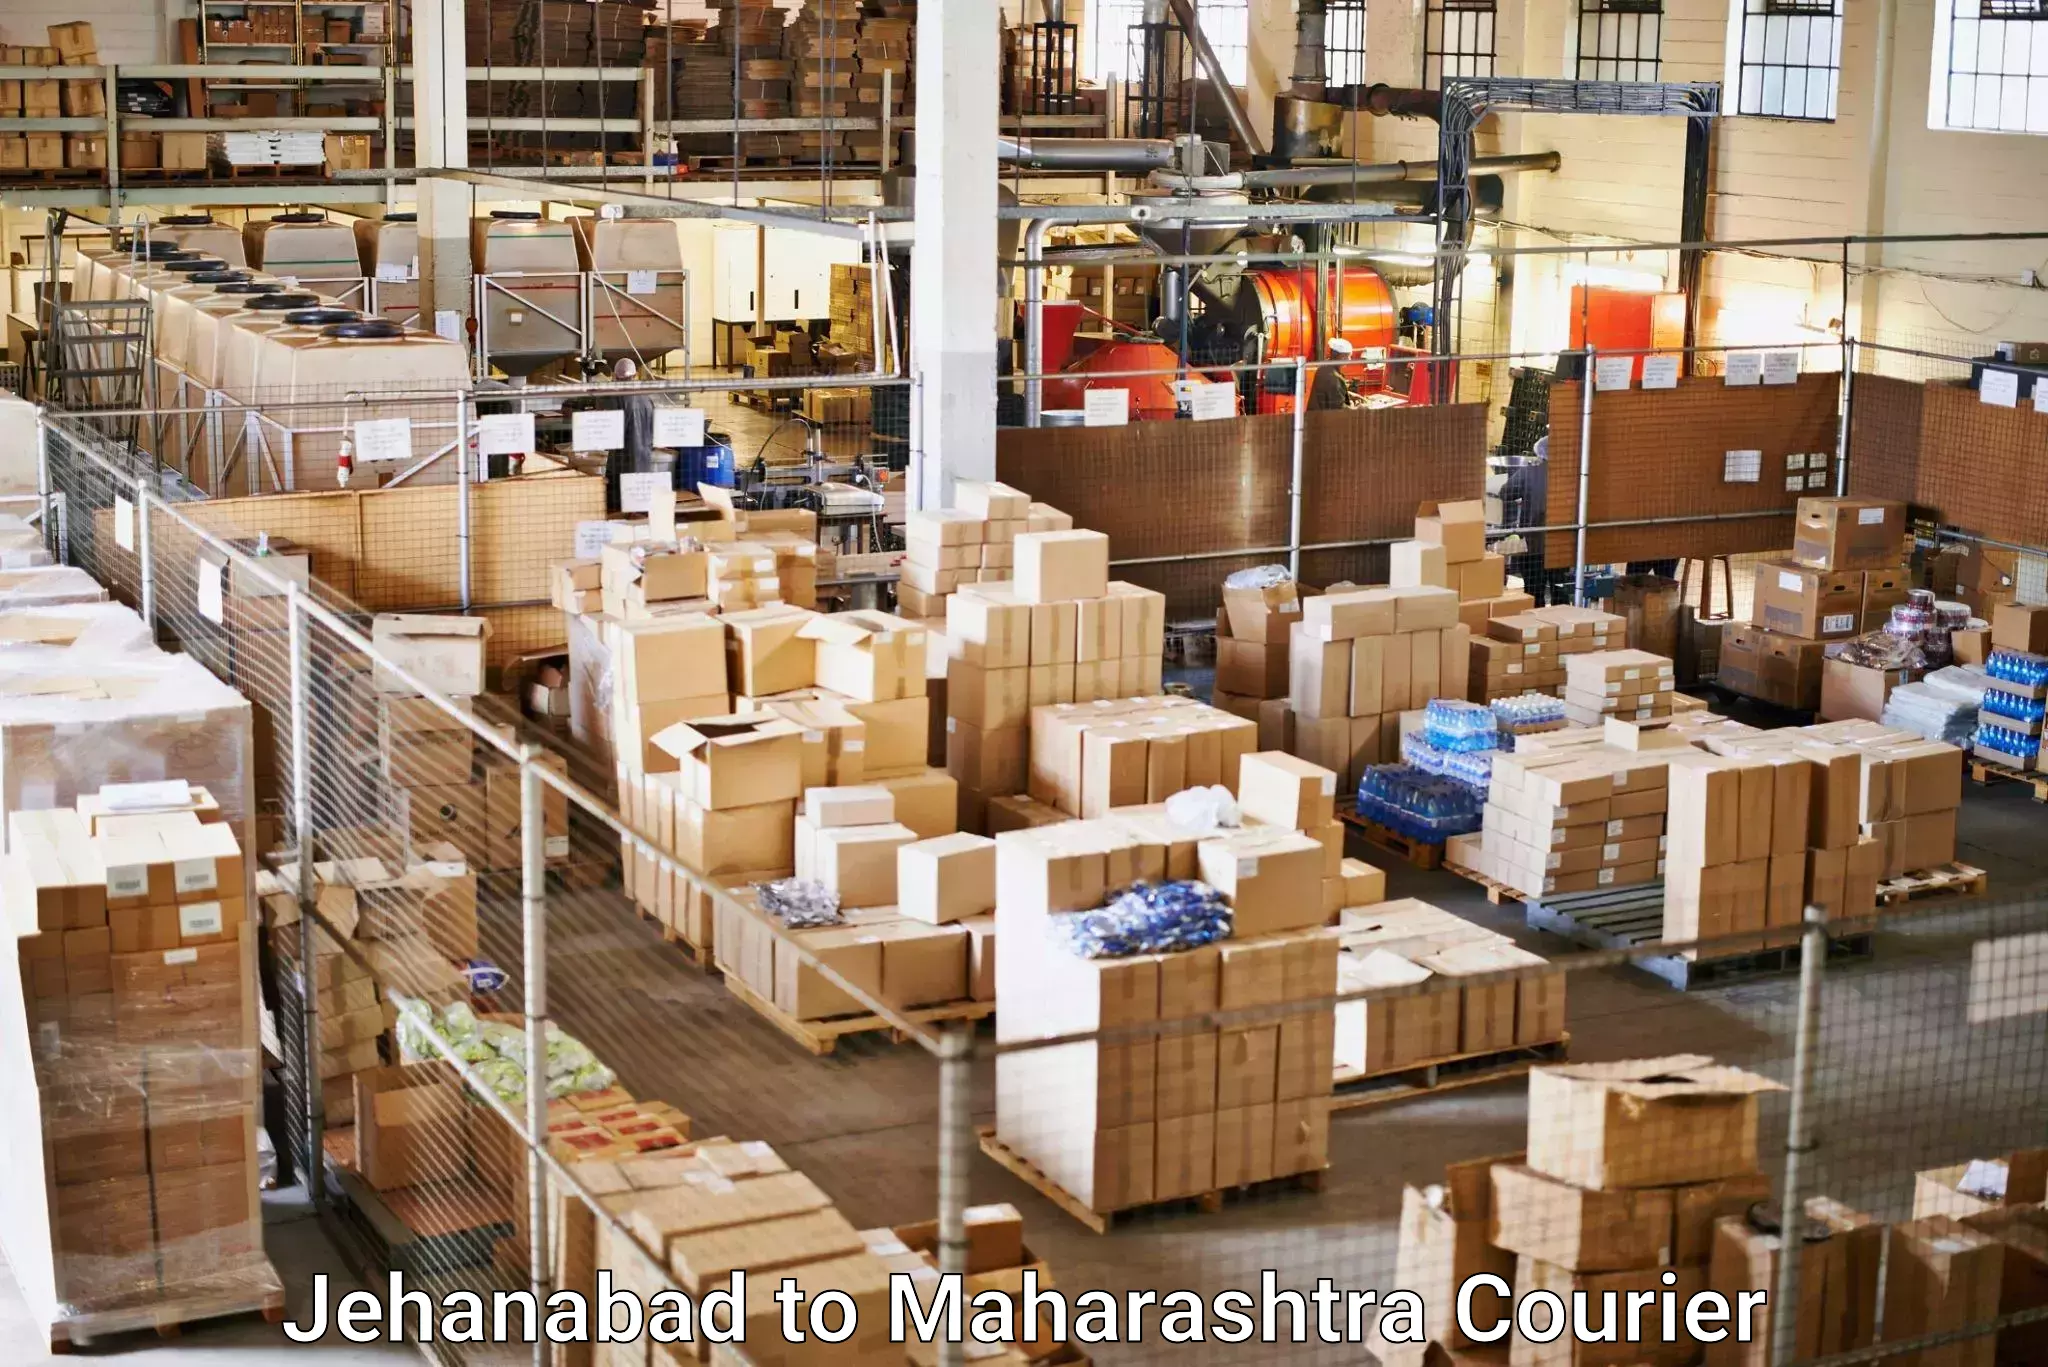 24/7 courier service Jehanabad to Maharashtra